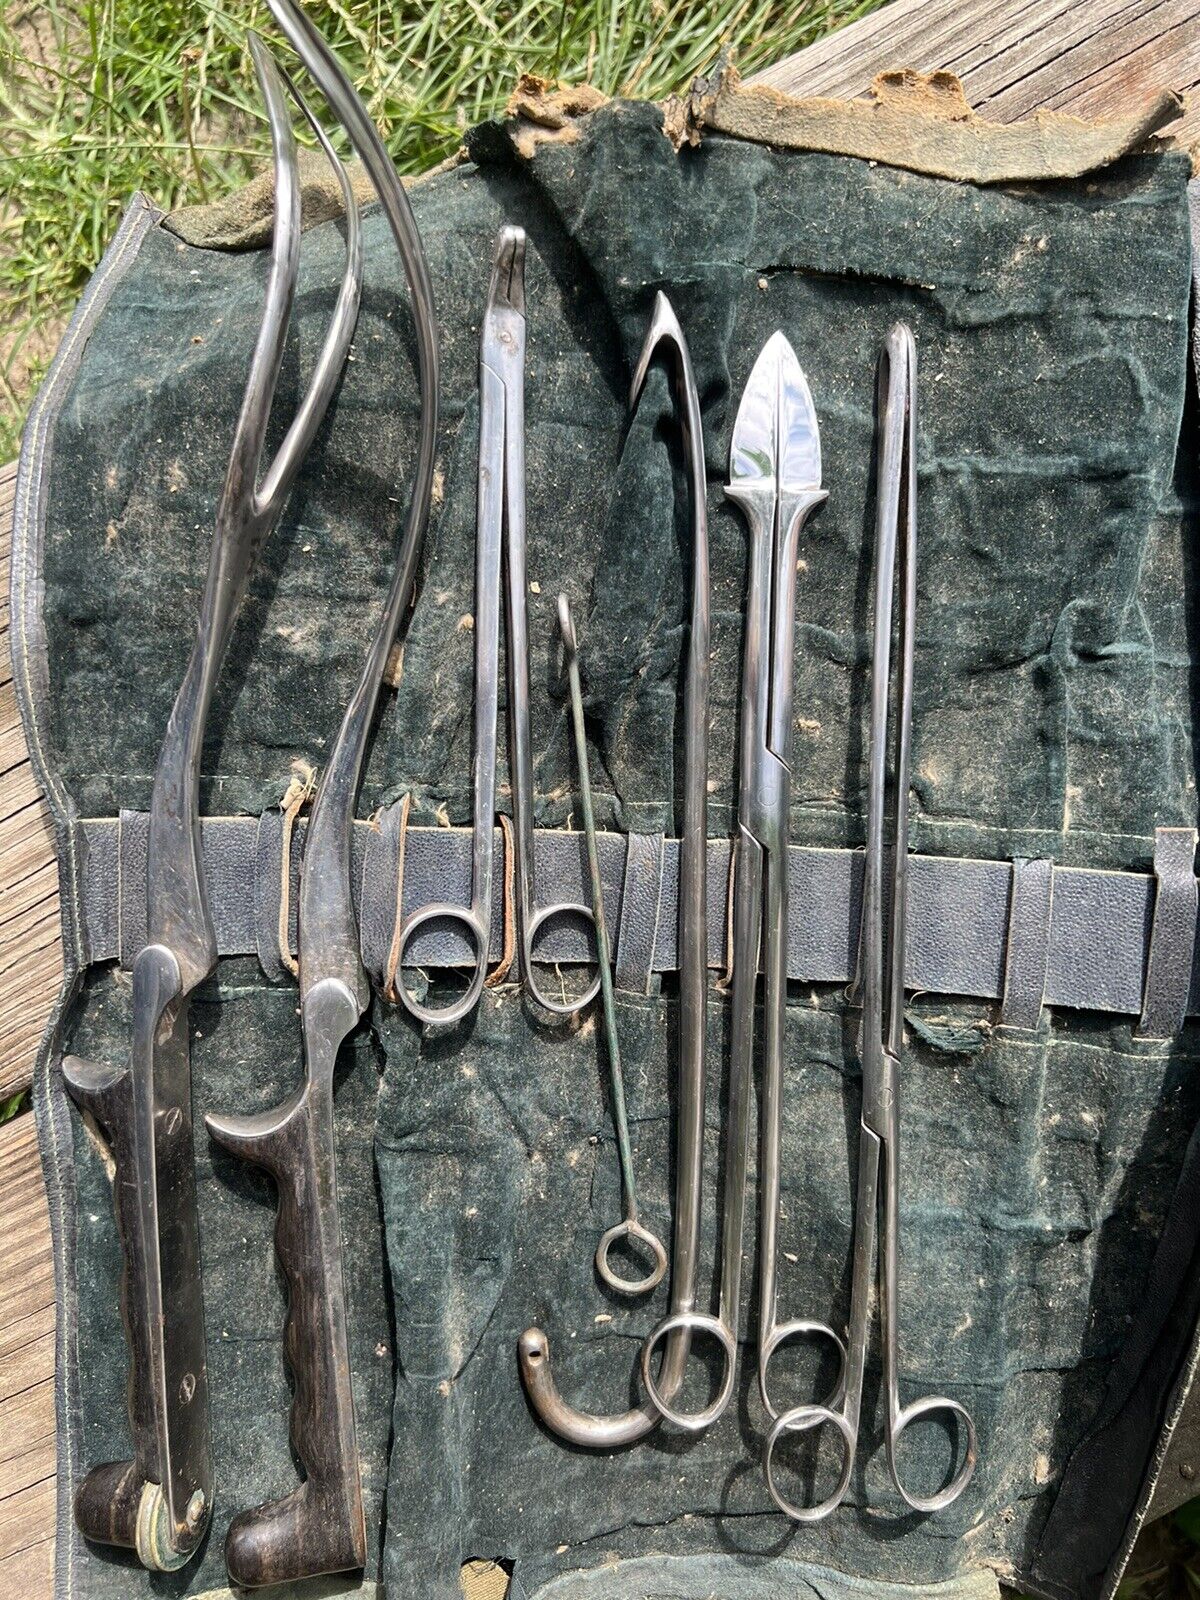 Civil War Surgical Tool Kit Belonged To Civil War Surgeon. Tiemann. Obg/yn